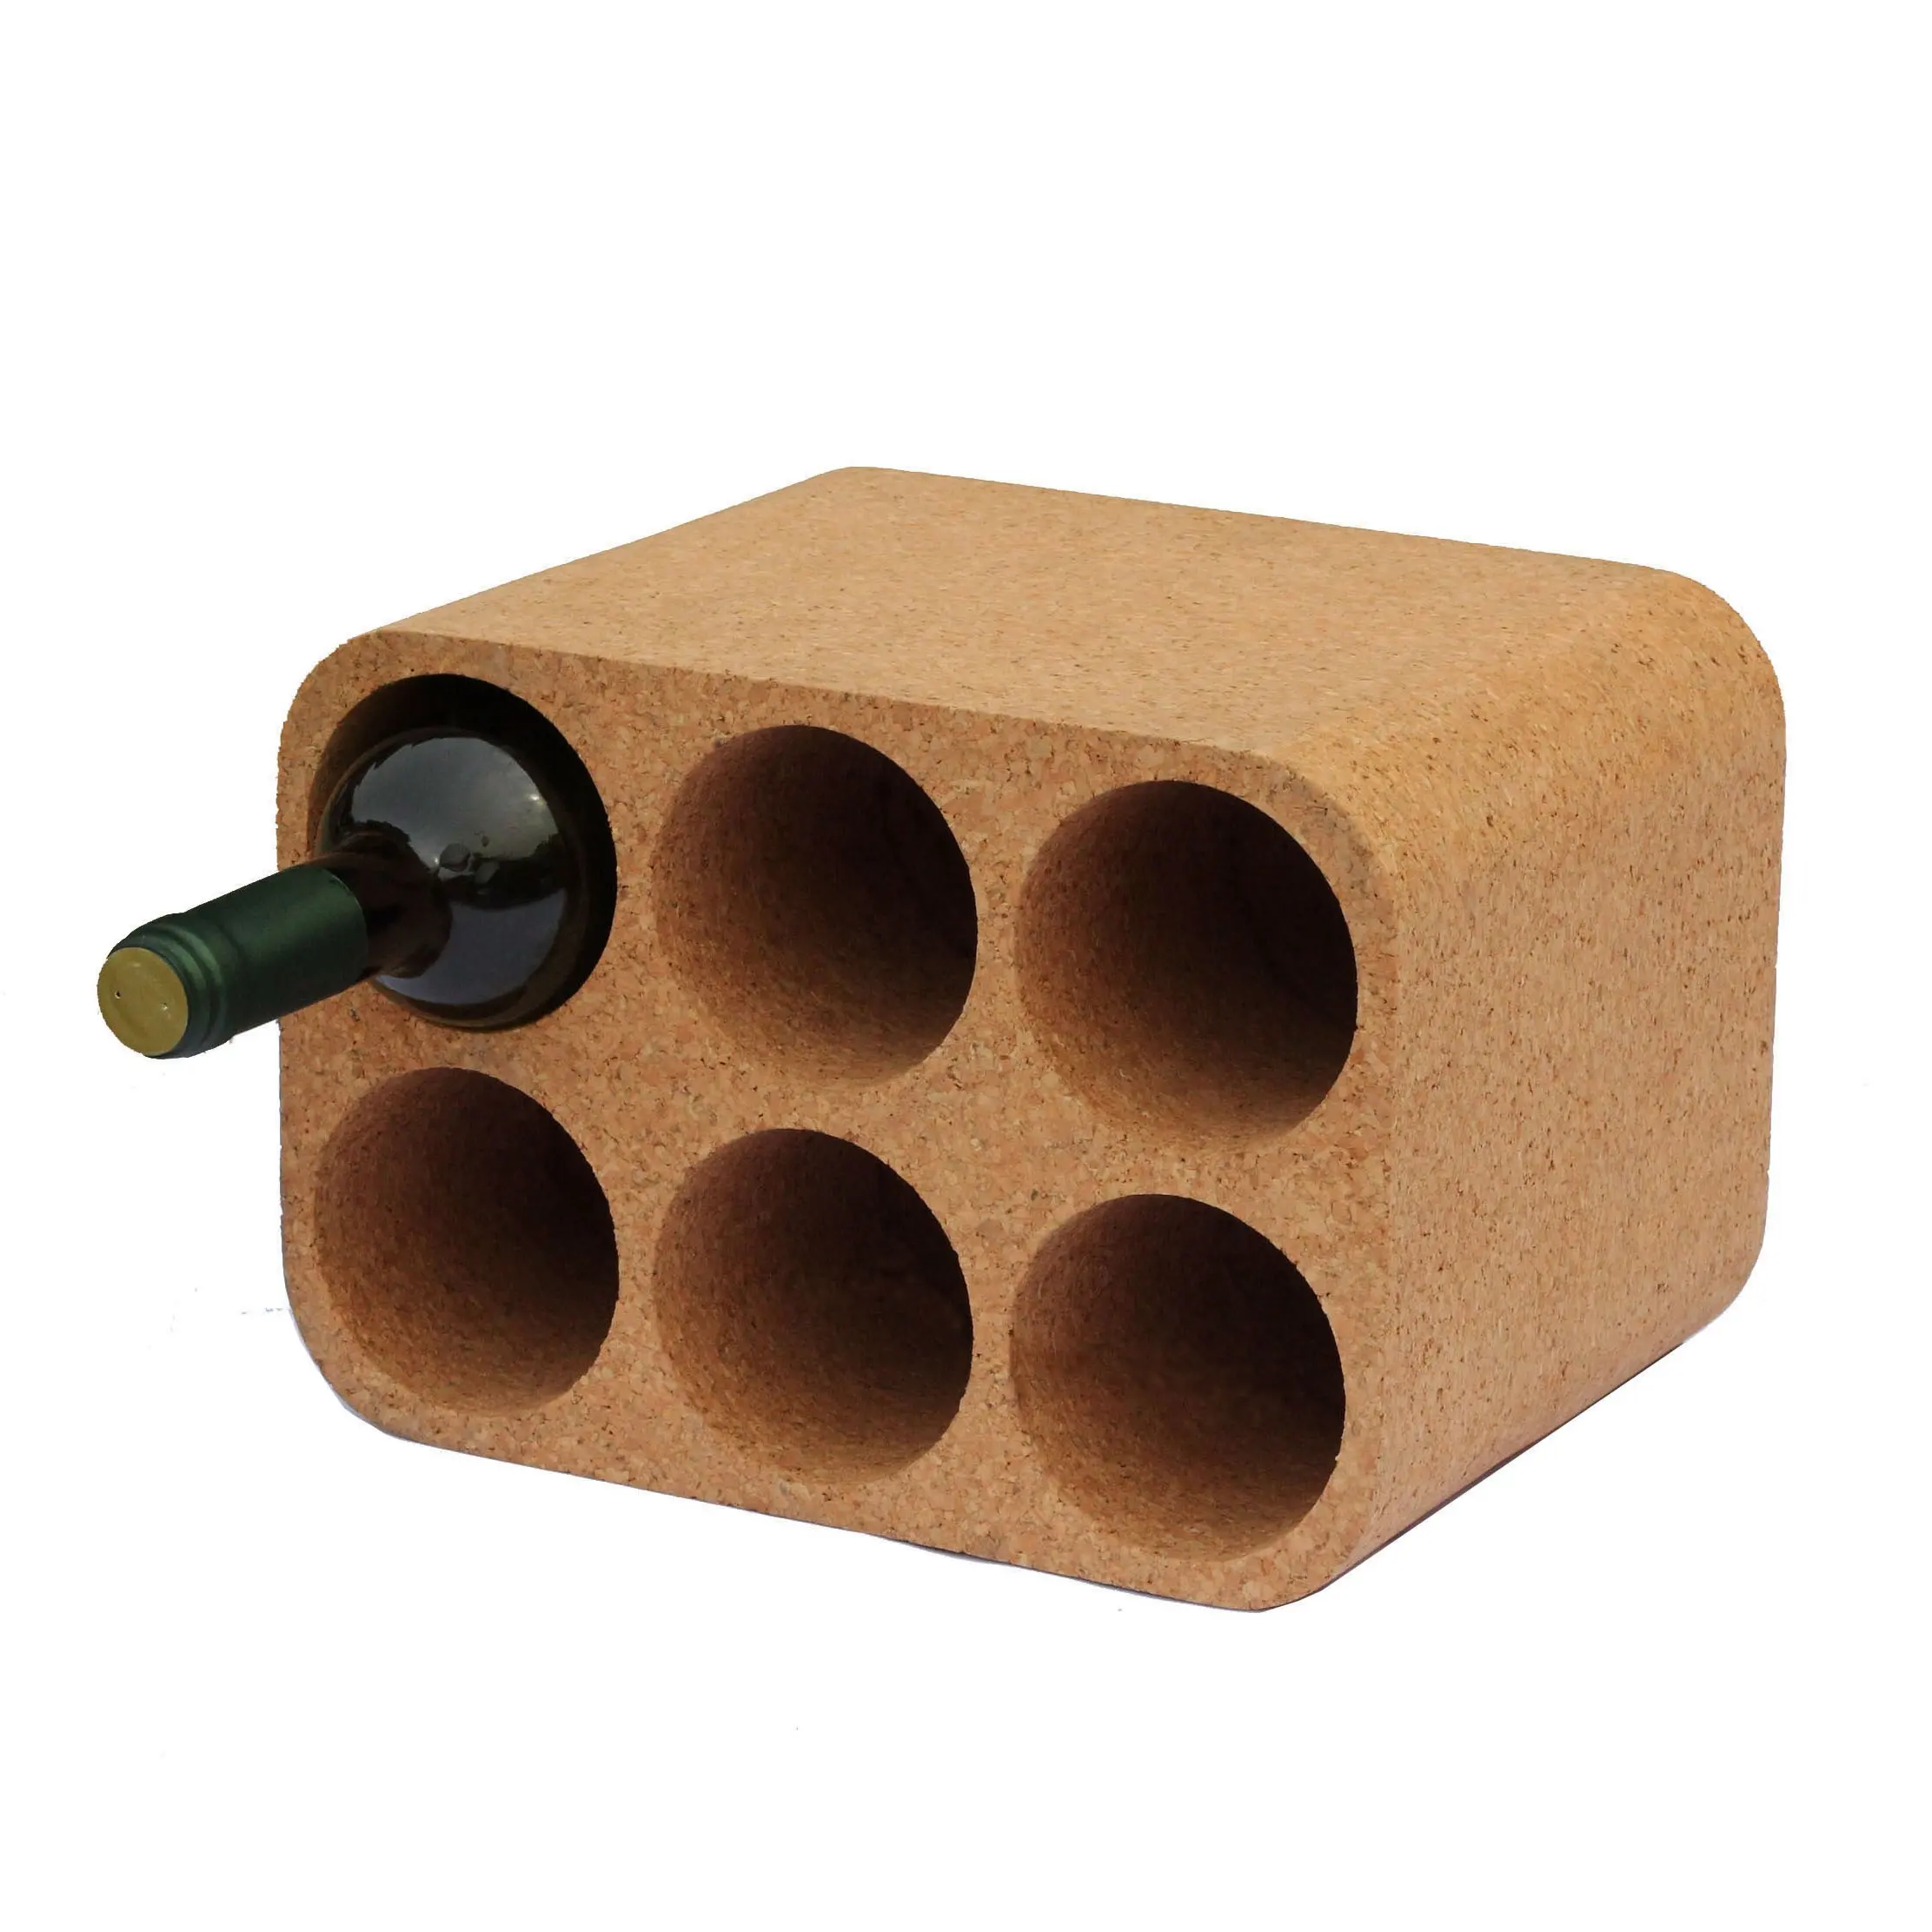 2020 natural cork wine holder